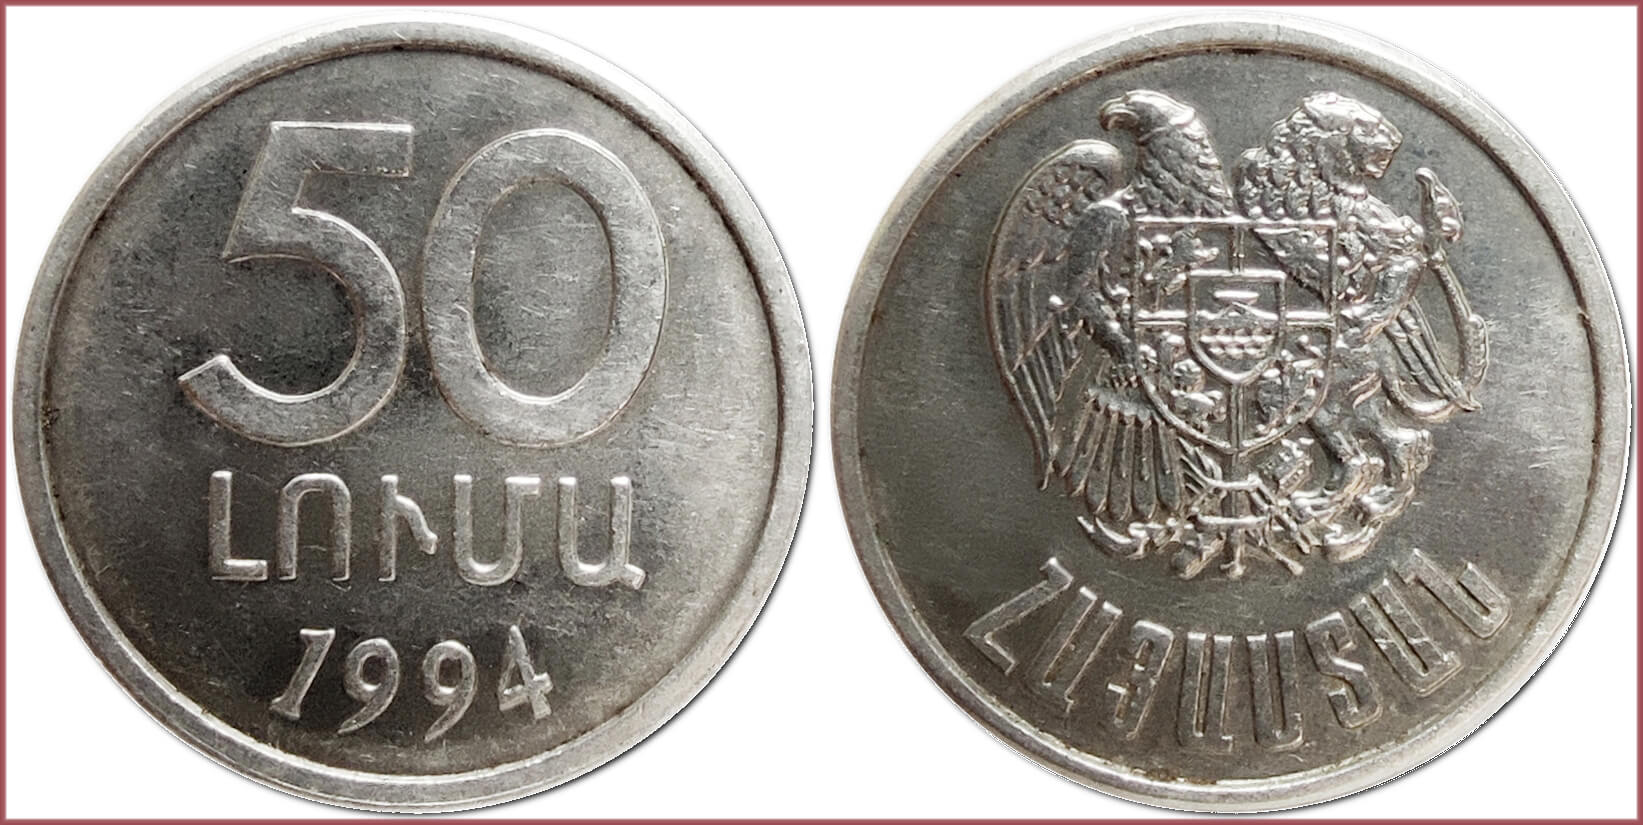 50 luma, 1994: Republic of Armenia